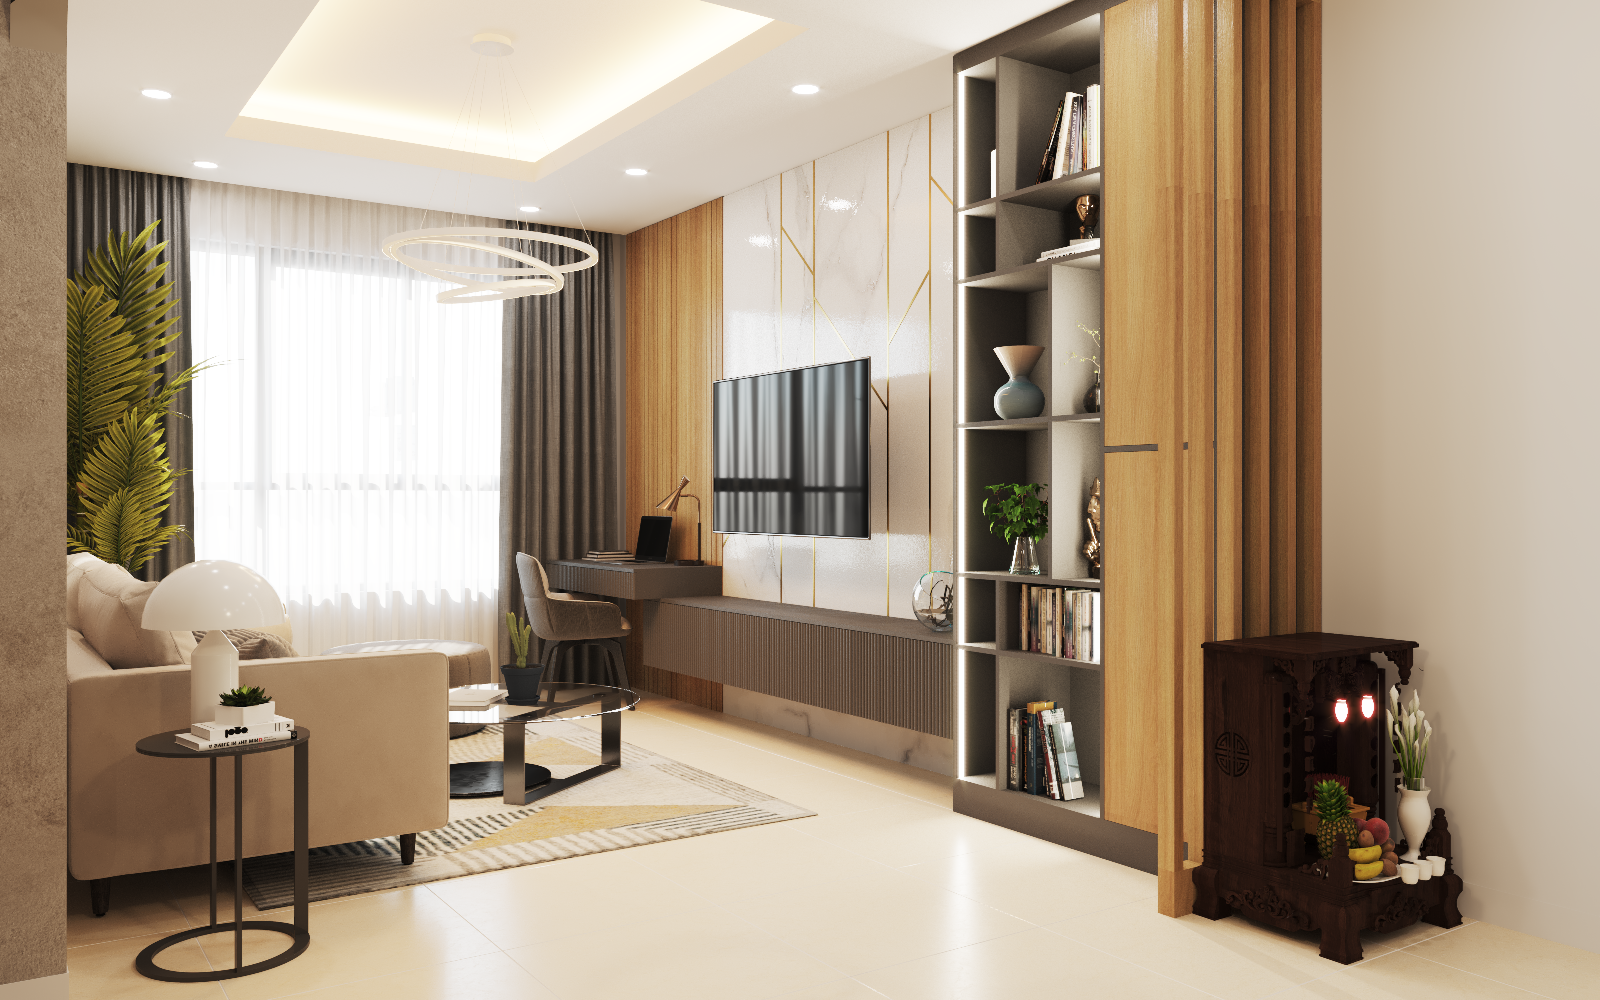 Thiết kế căn hộ 01 phòng ngủ chung cư Emerald quận Tân Phú ảnh 05